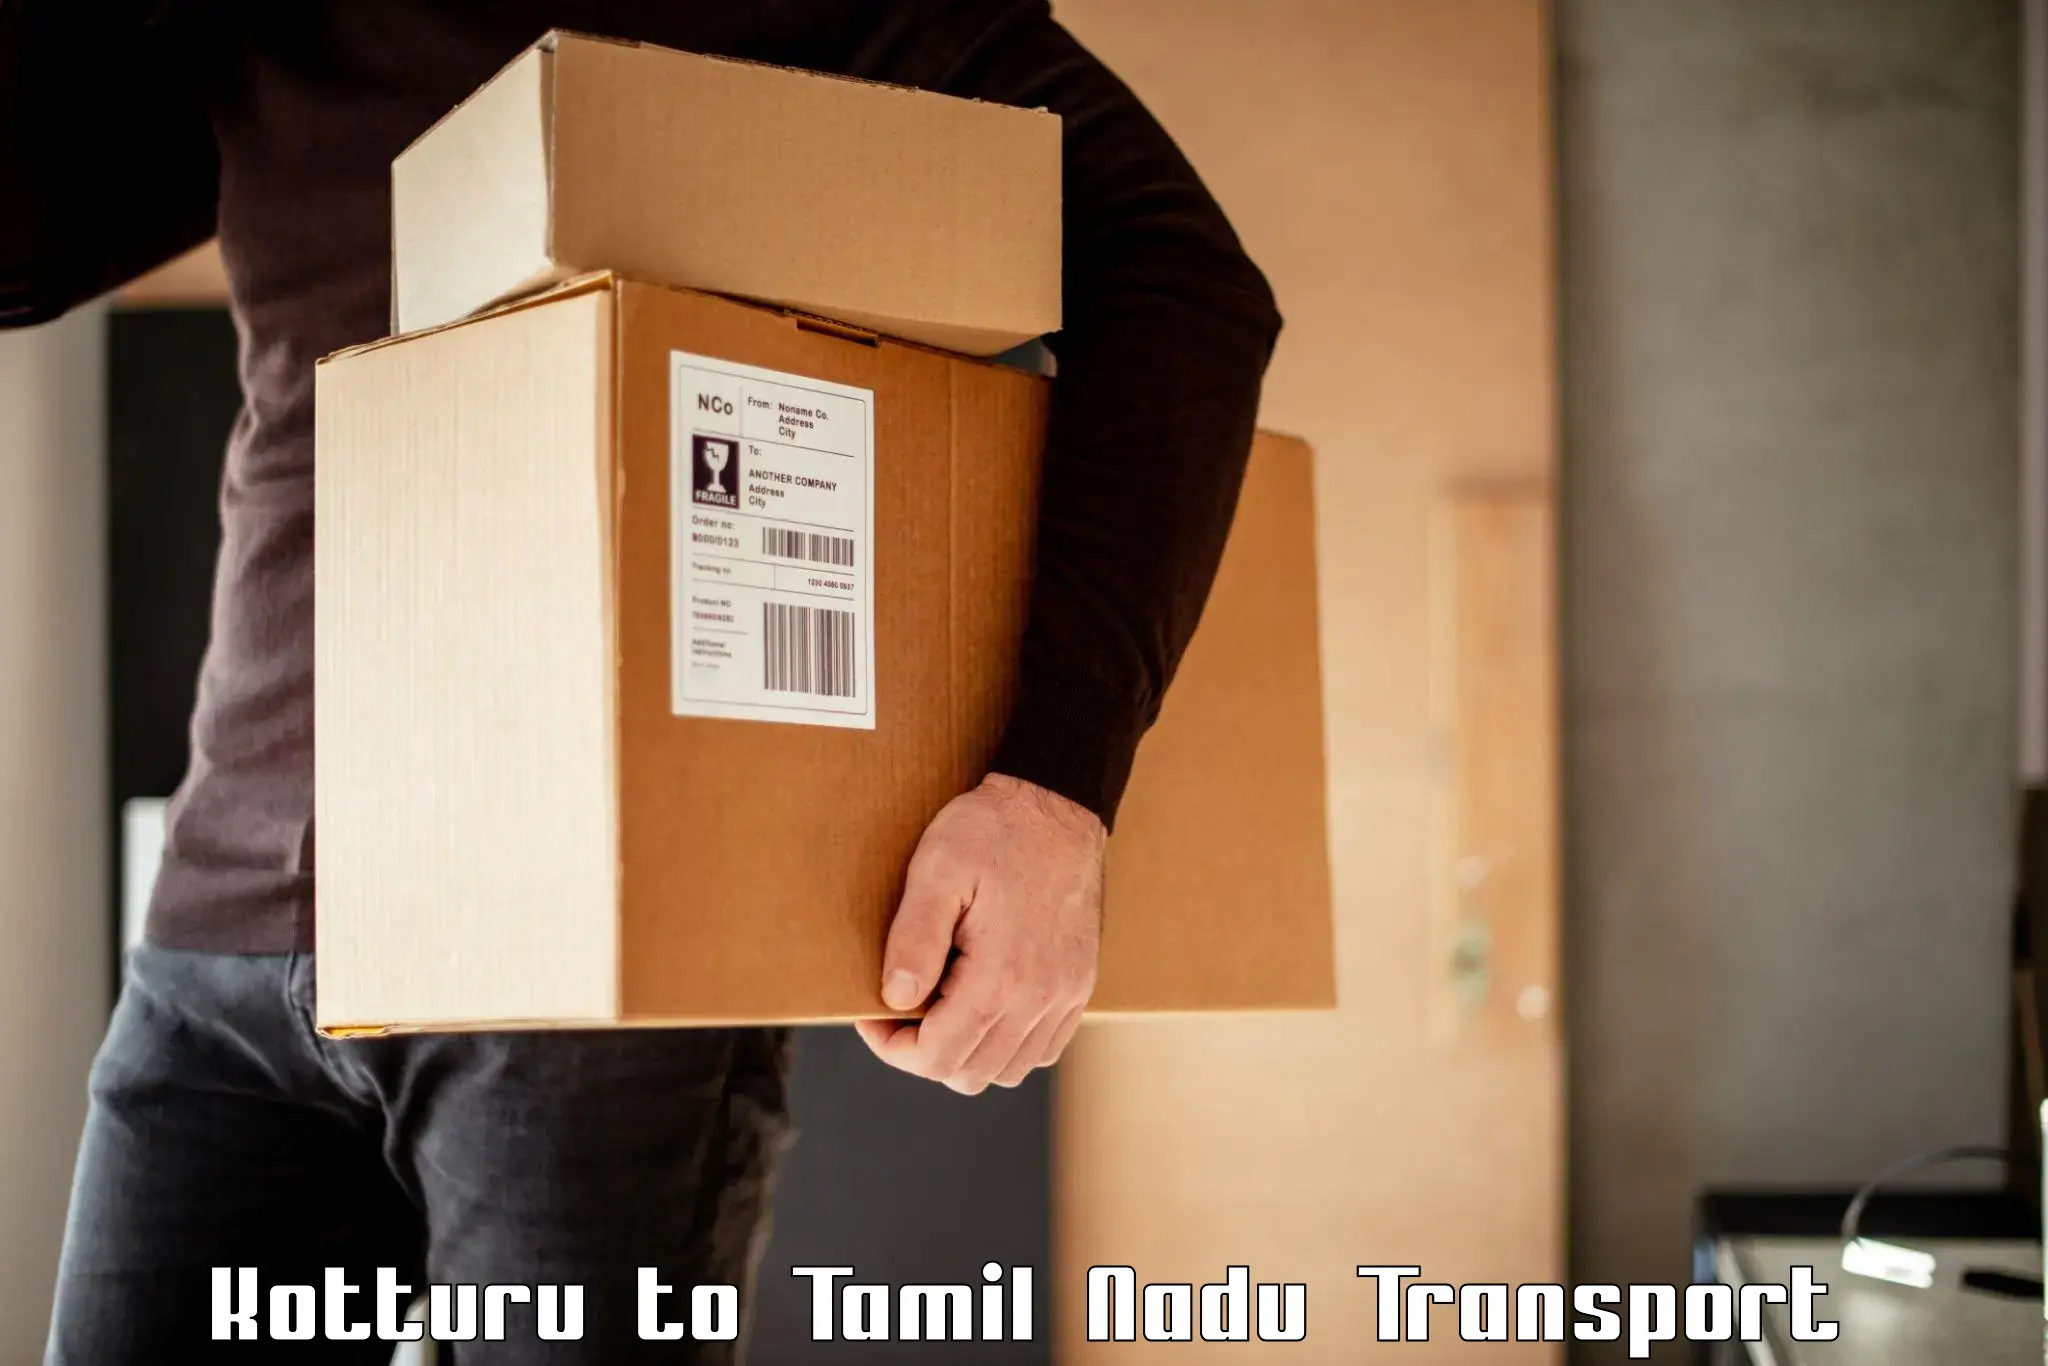 Package delivery services Kotturu to Palladam